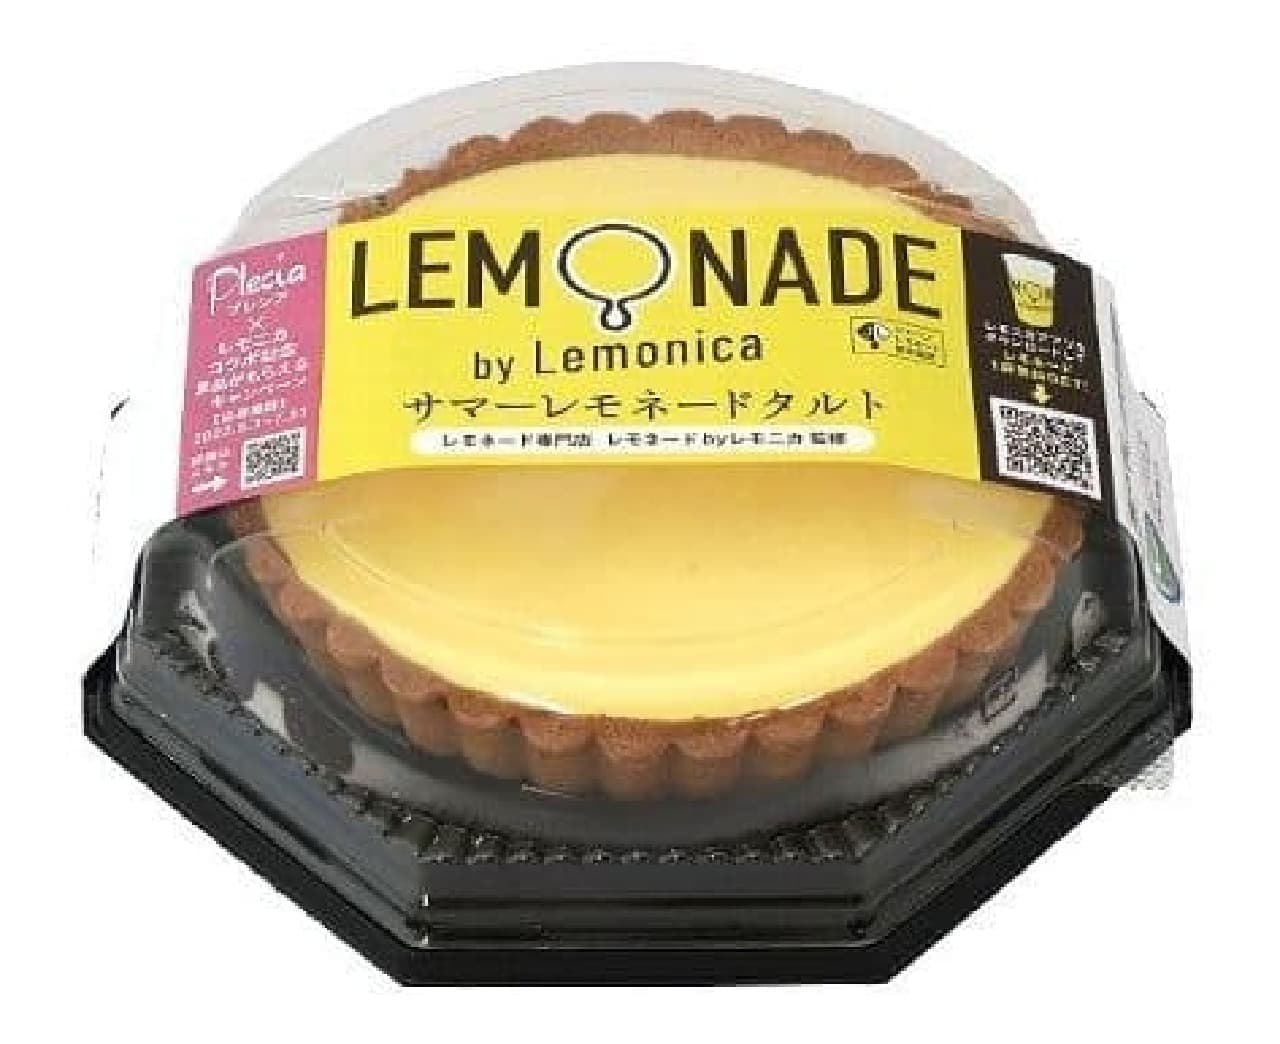 Summer Lemonade Tart" supervised by Lemonade by Lemonica